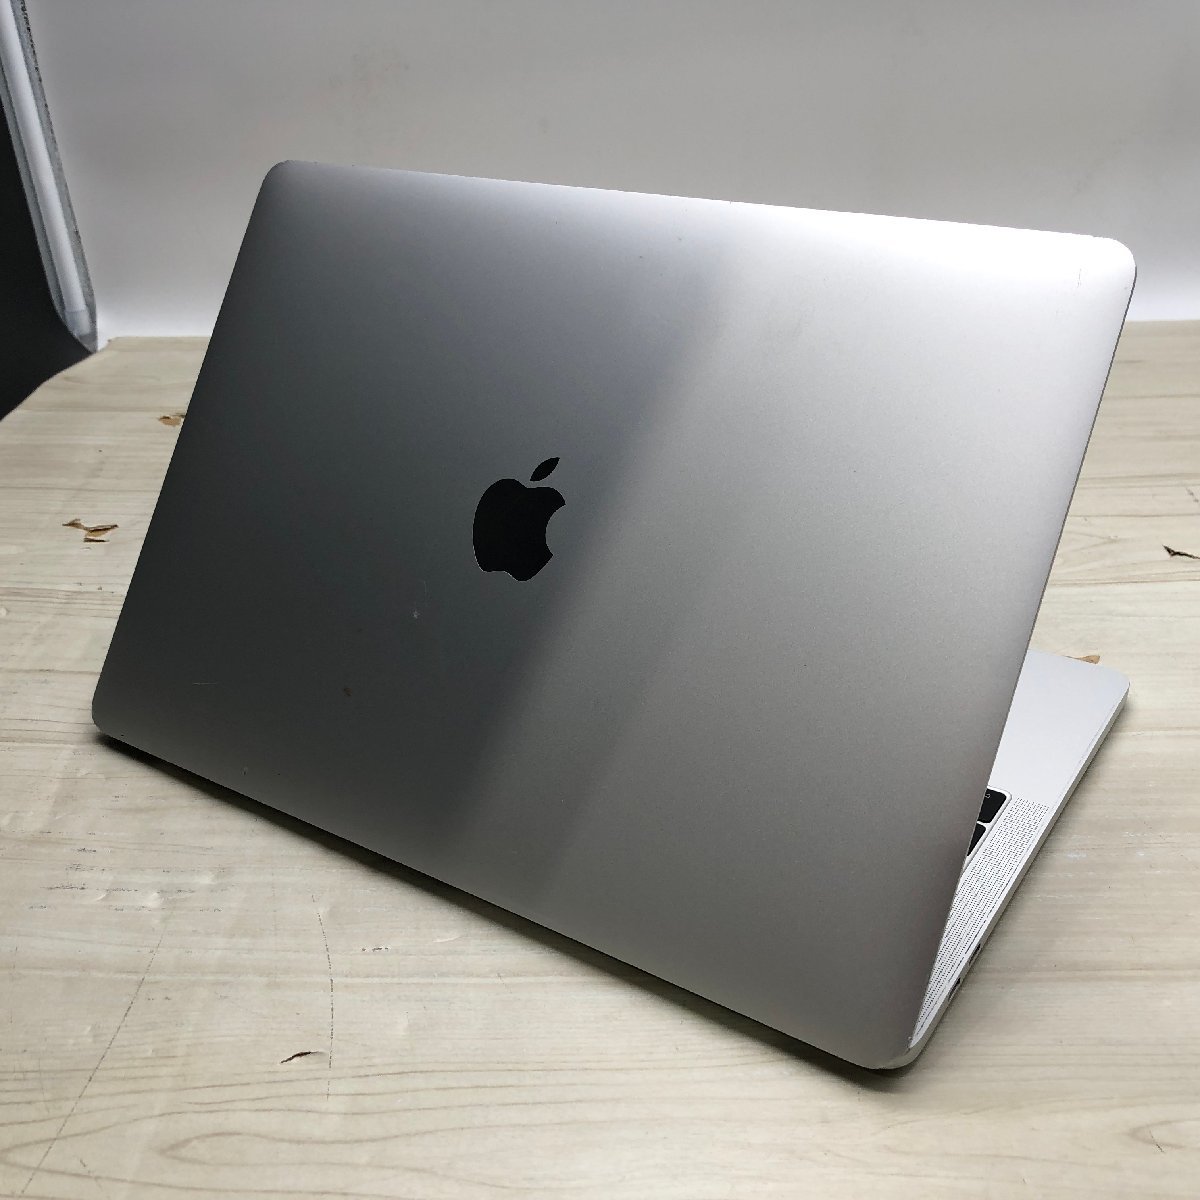 売る Apple MacBook Pro 13-inch 2016 Thunderbolt 3 ports x4 Core i5